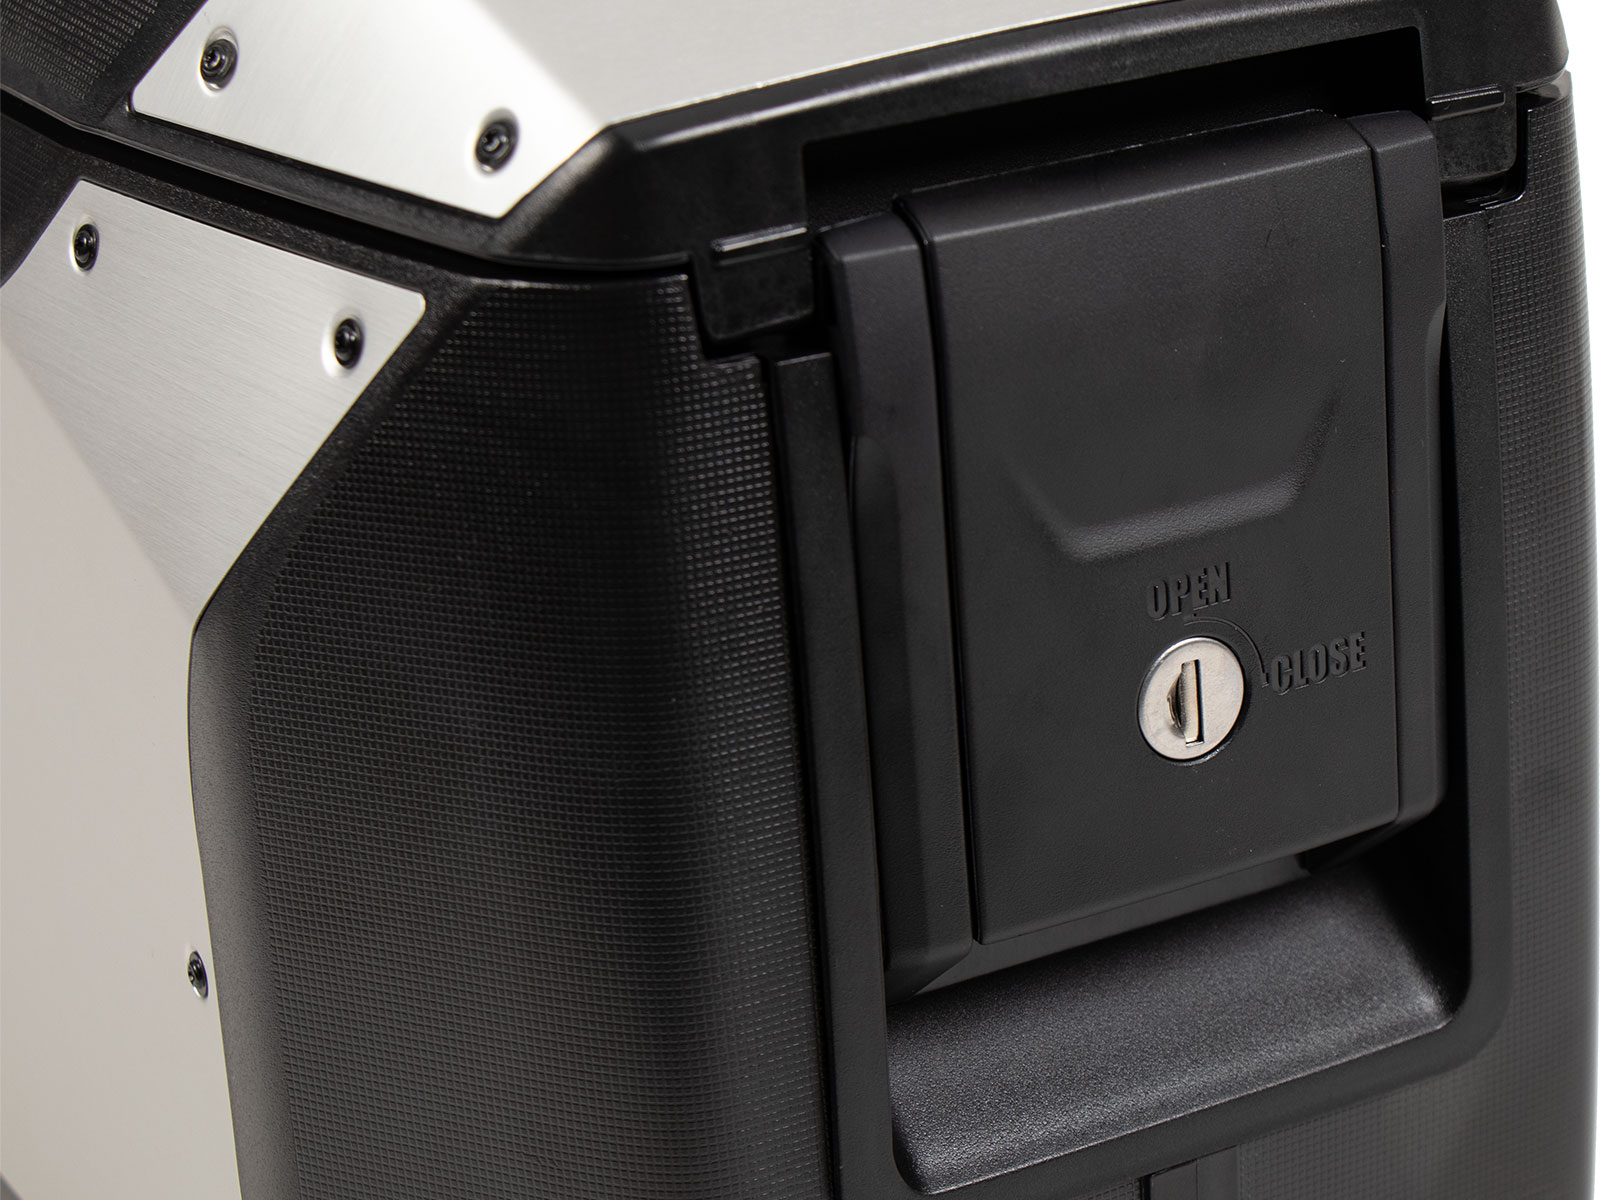 Acheter Hepco & Becker valises latérale paire Xcore pour C-Bow 36 Liter  noir/argent Gris – POLO Motorrad